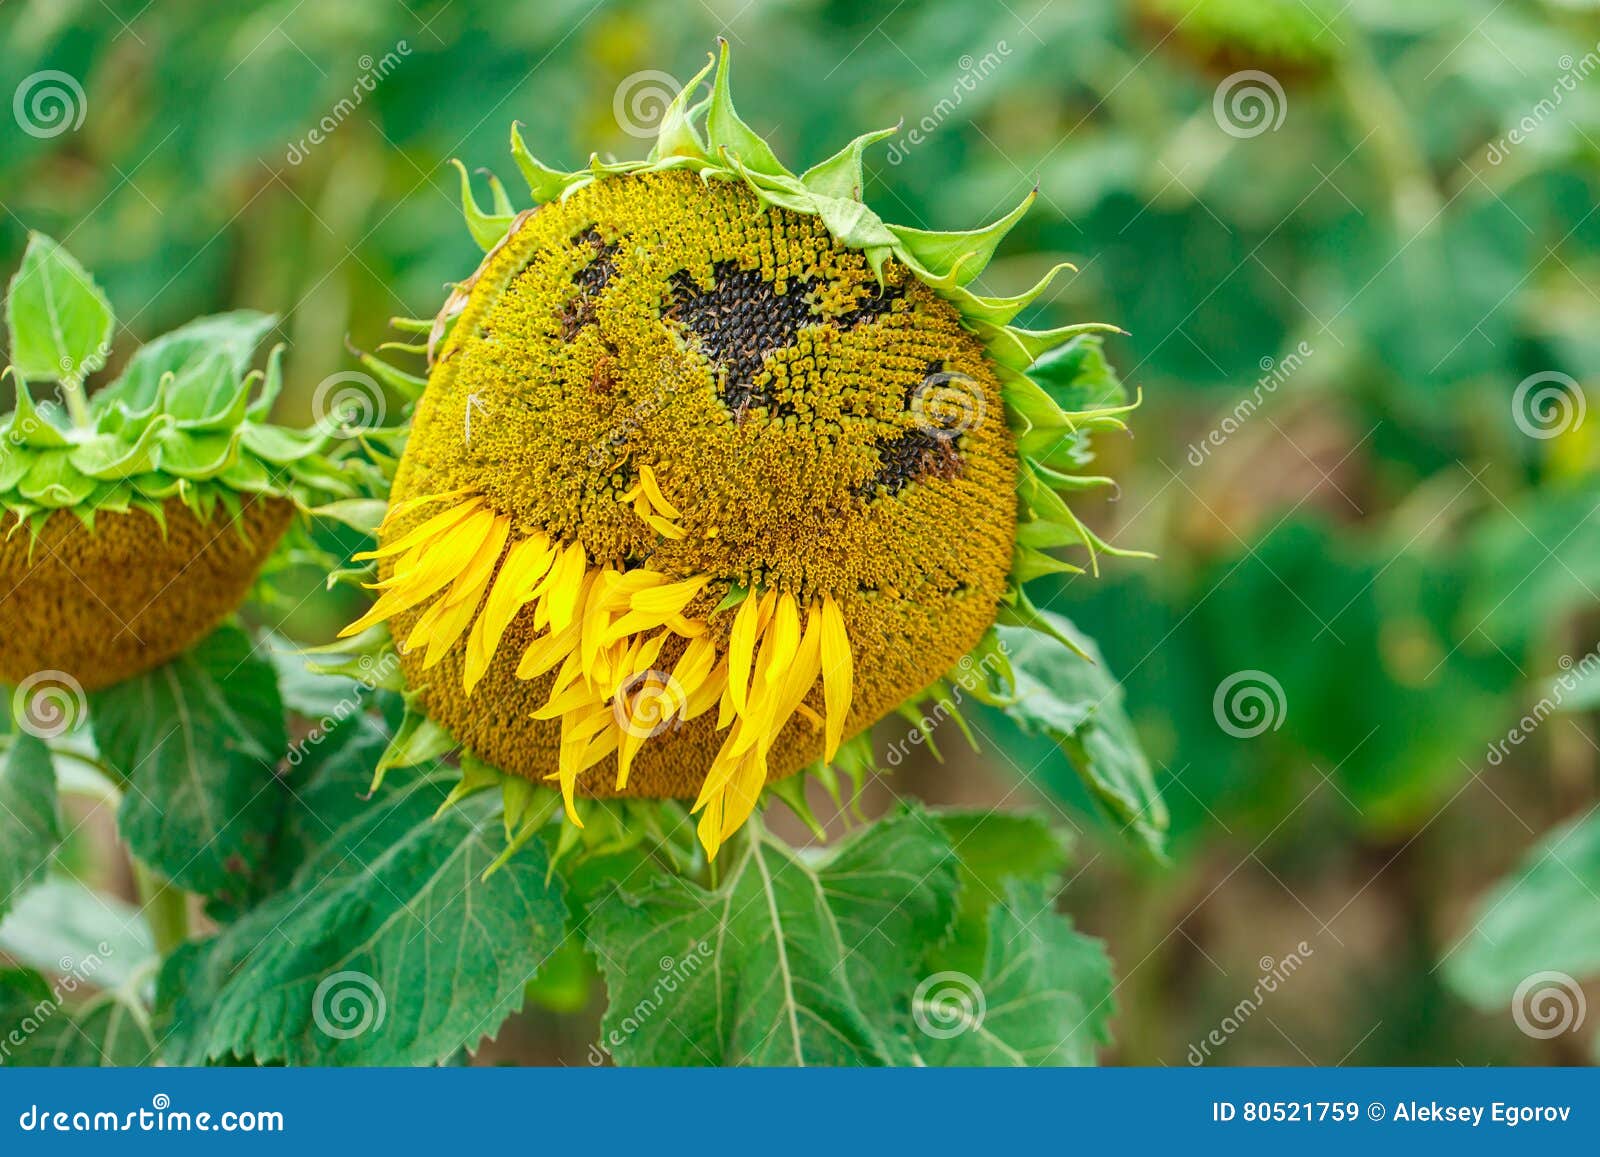 Sunflower with eyes stock image. Image of botany, love - 80521759